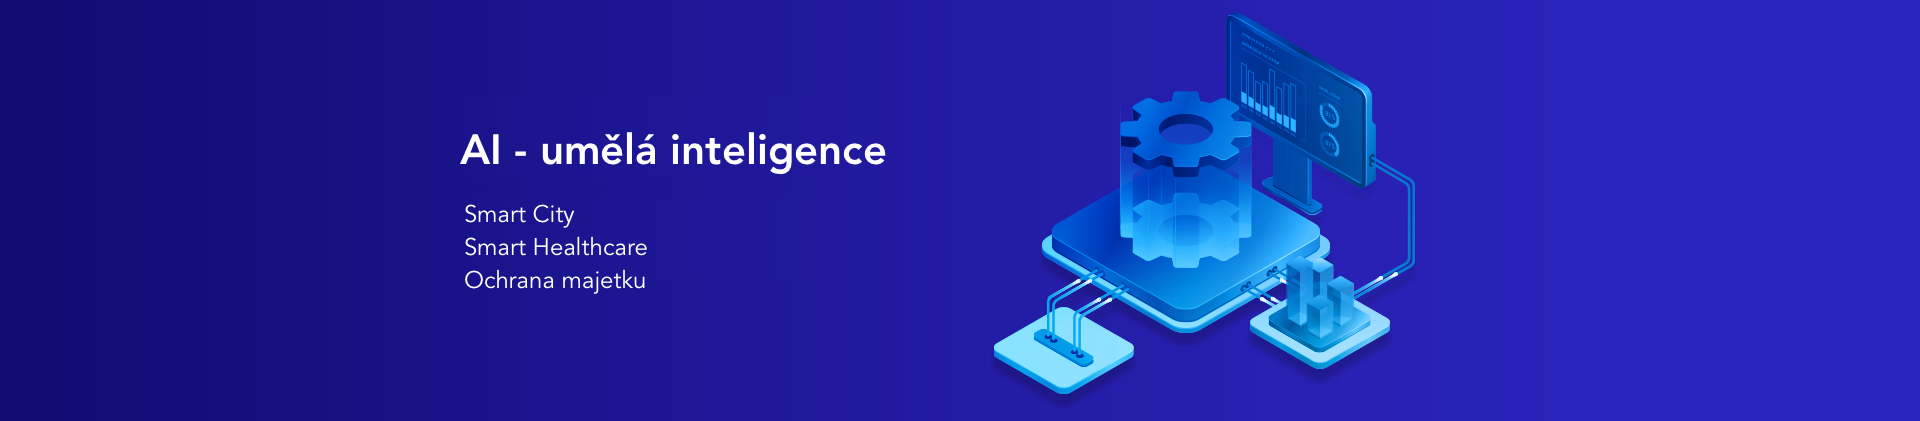 AI - umělá inteligence